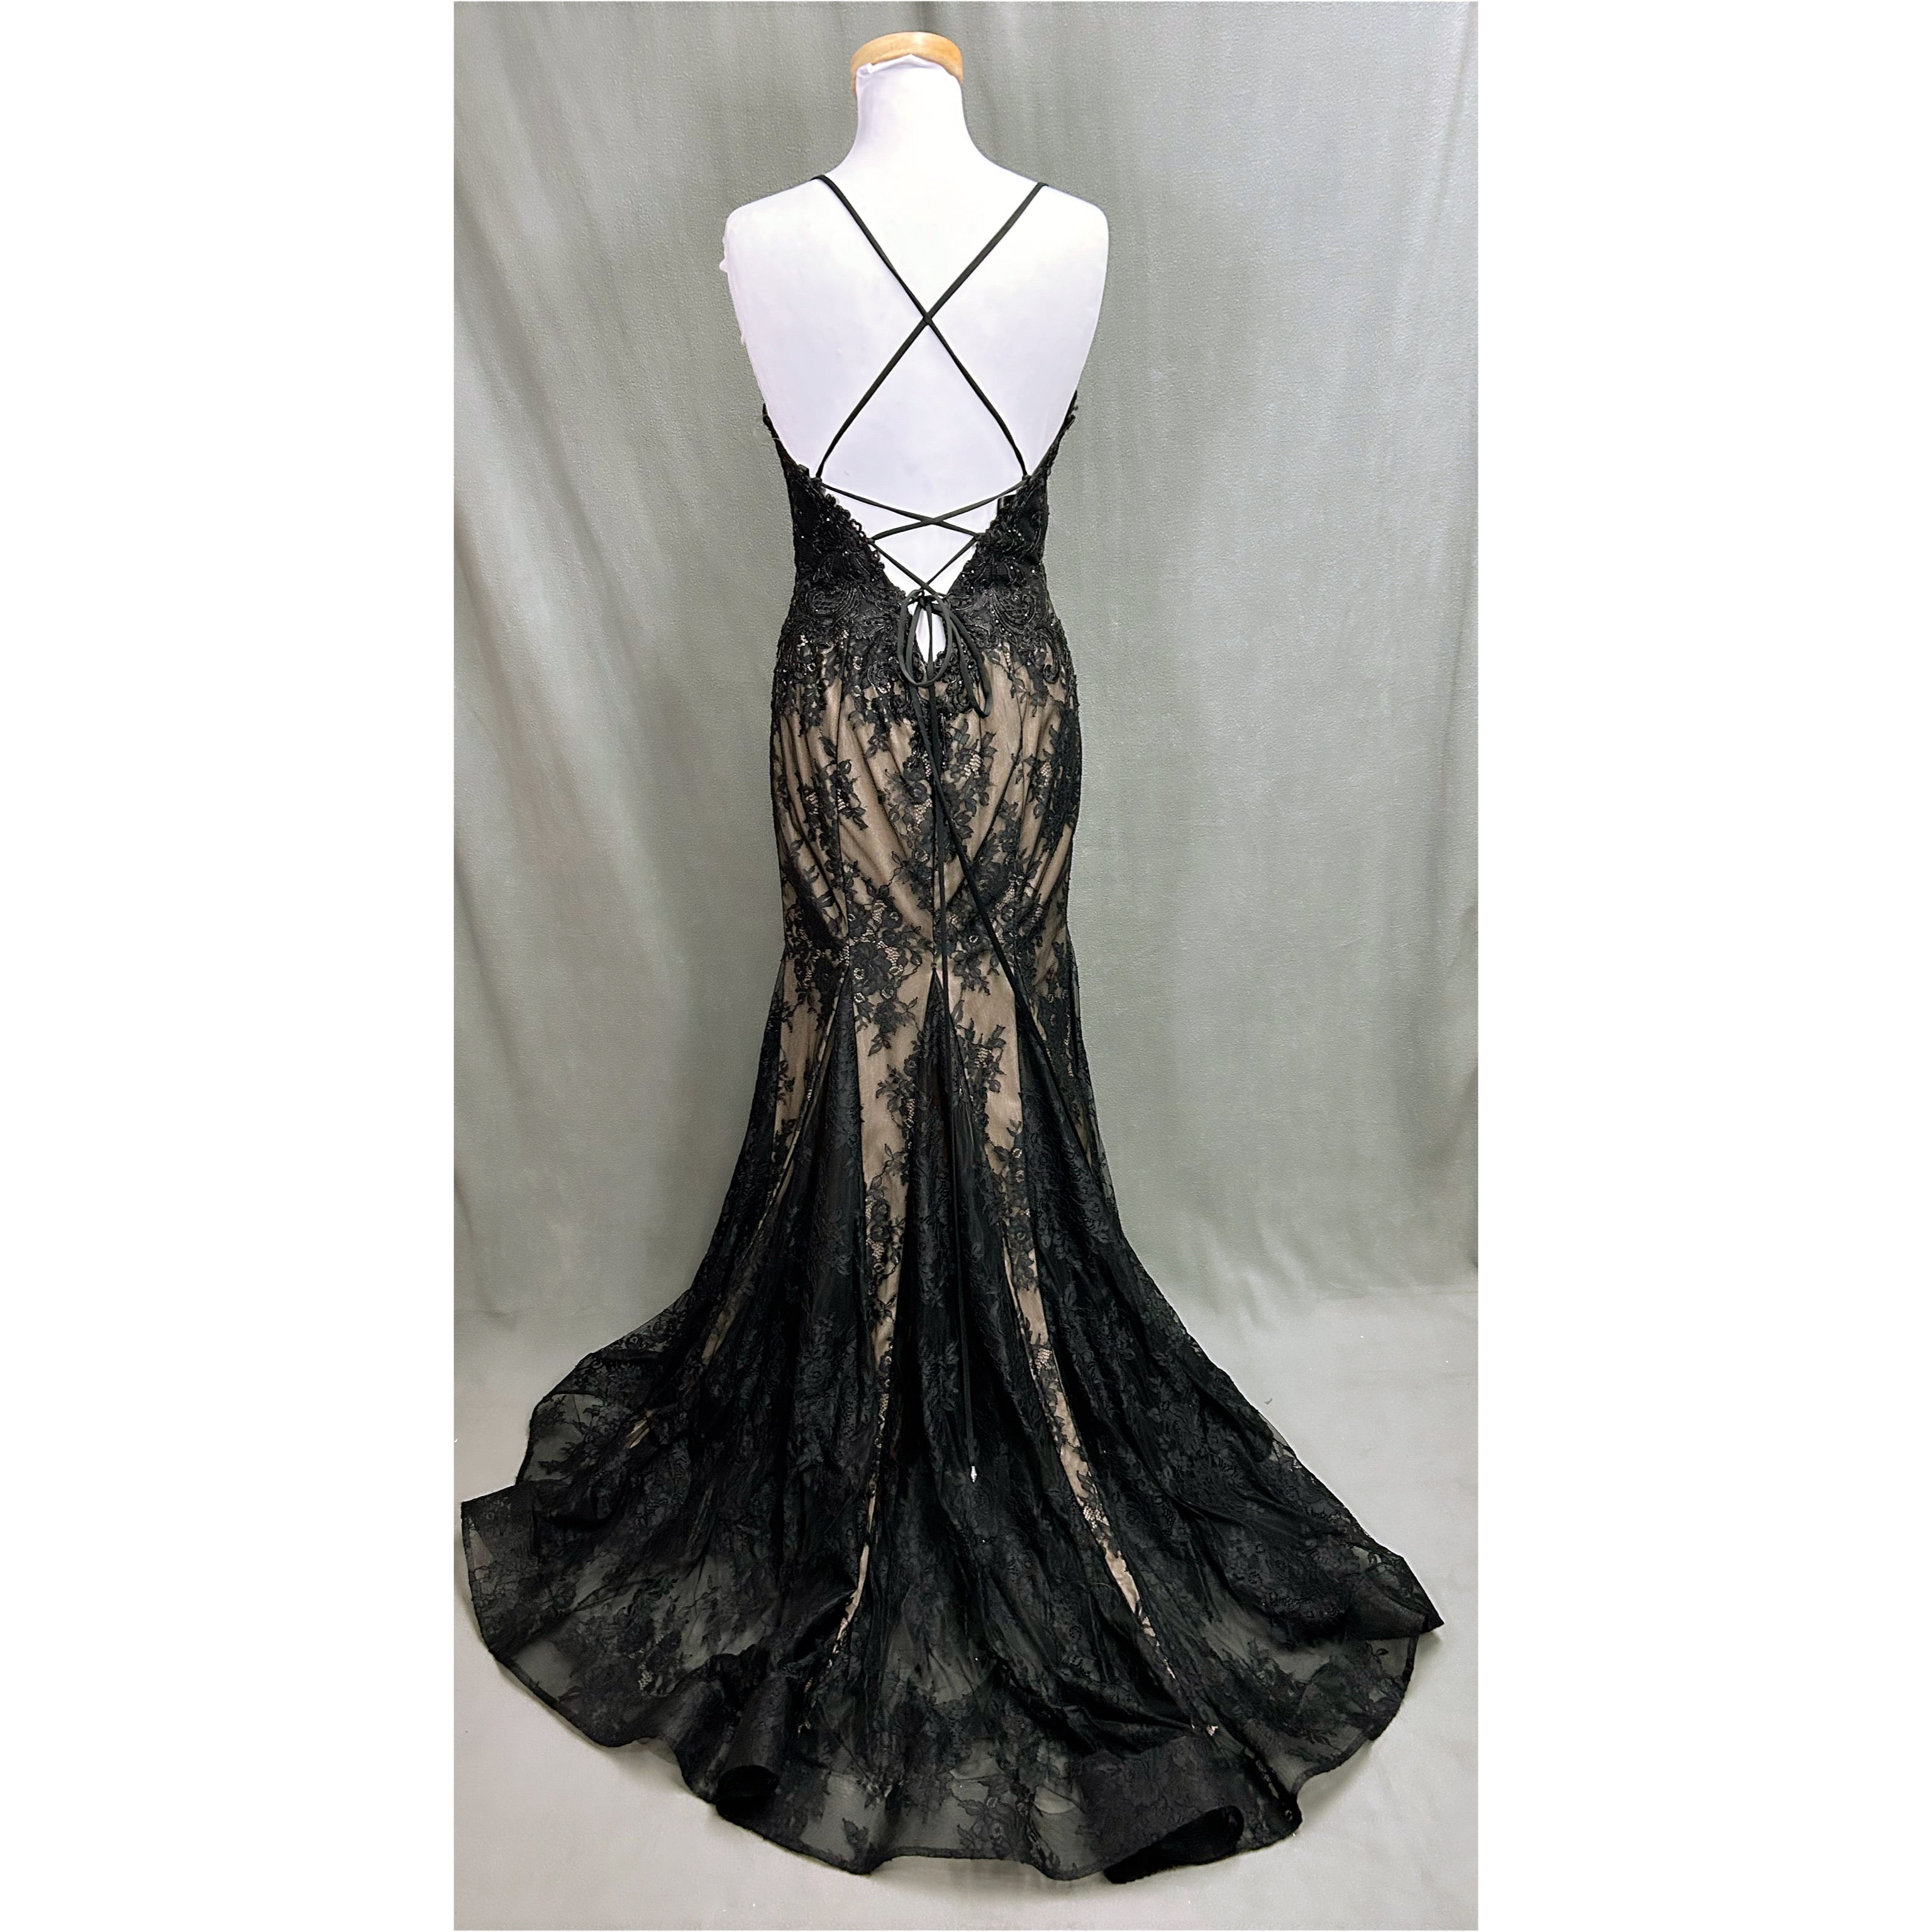 Mori Lee black dress, size 10